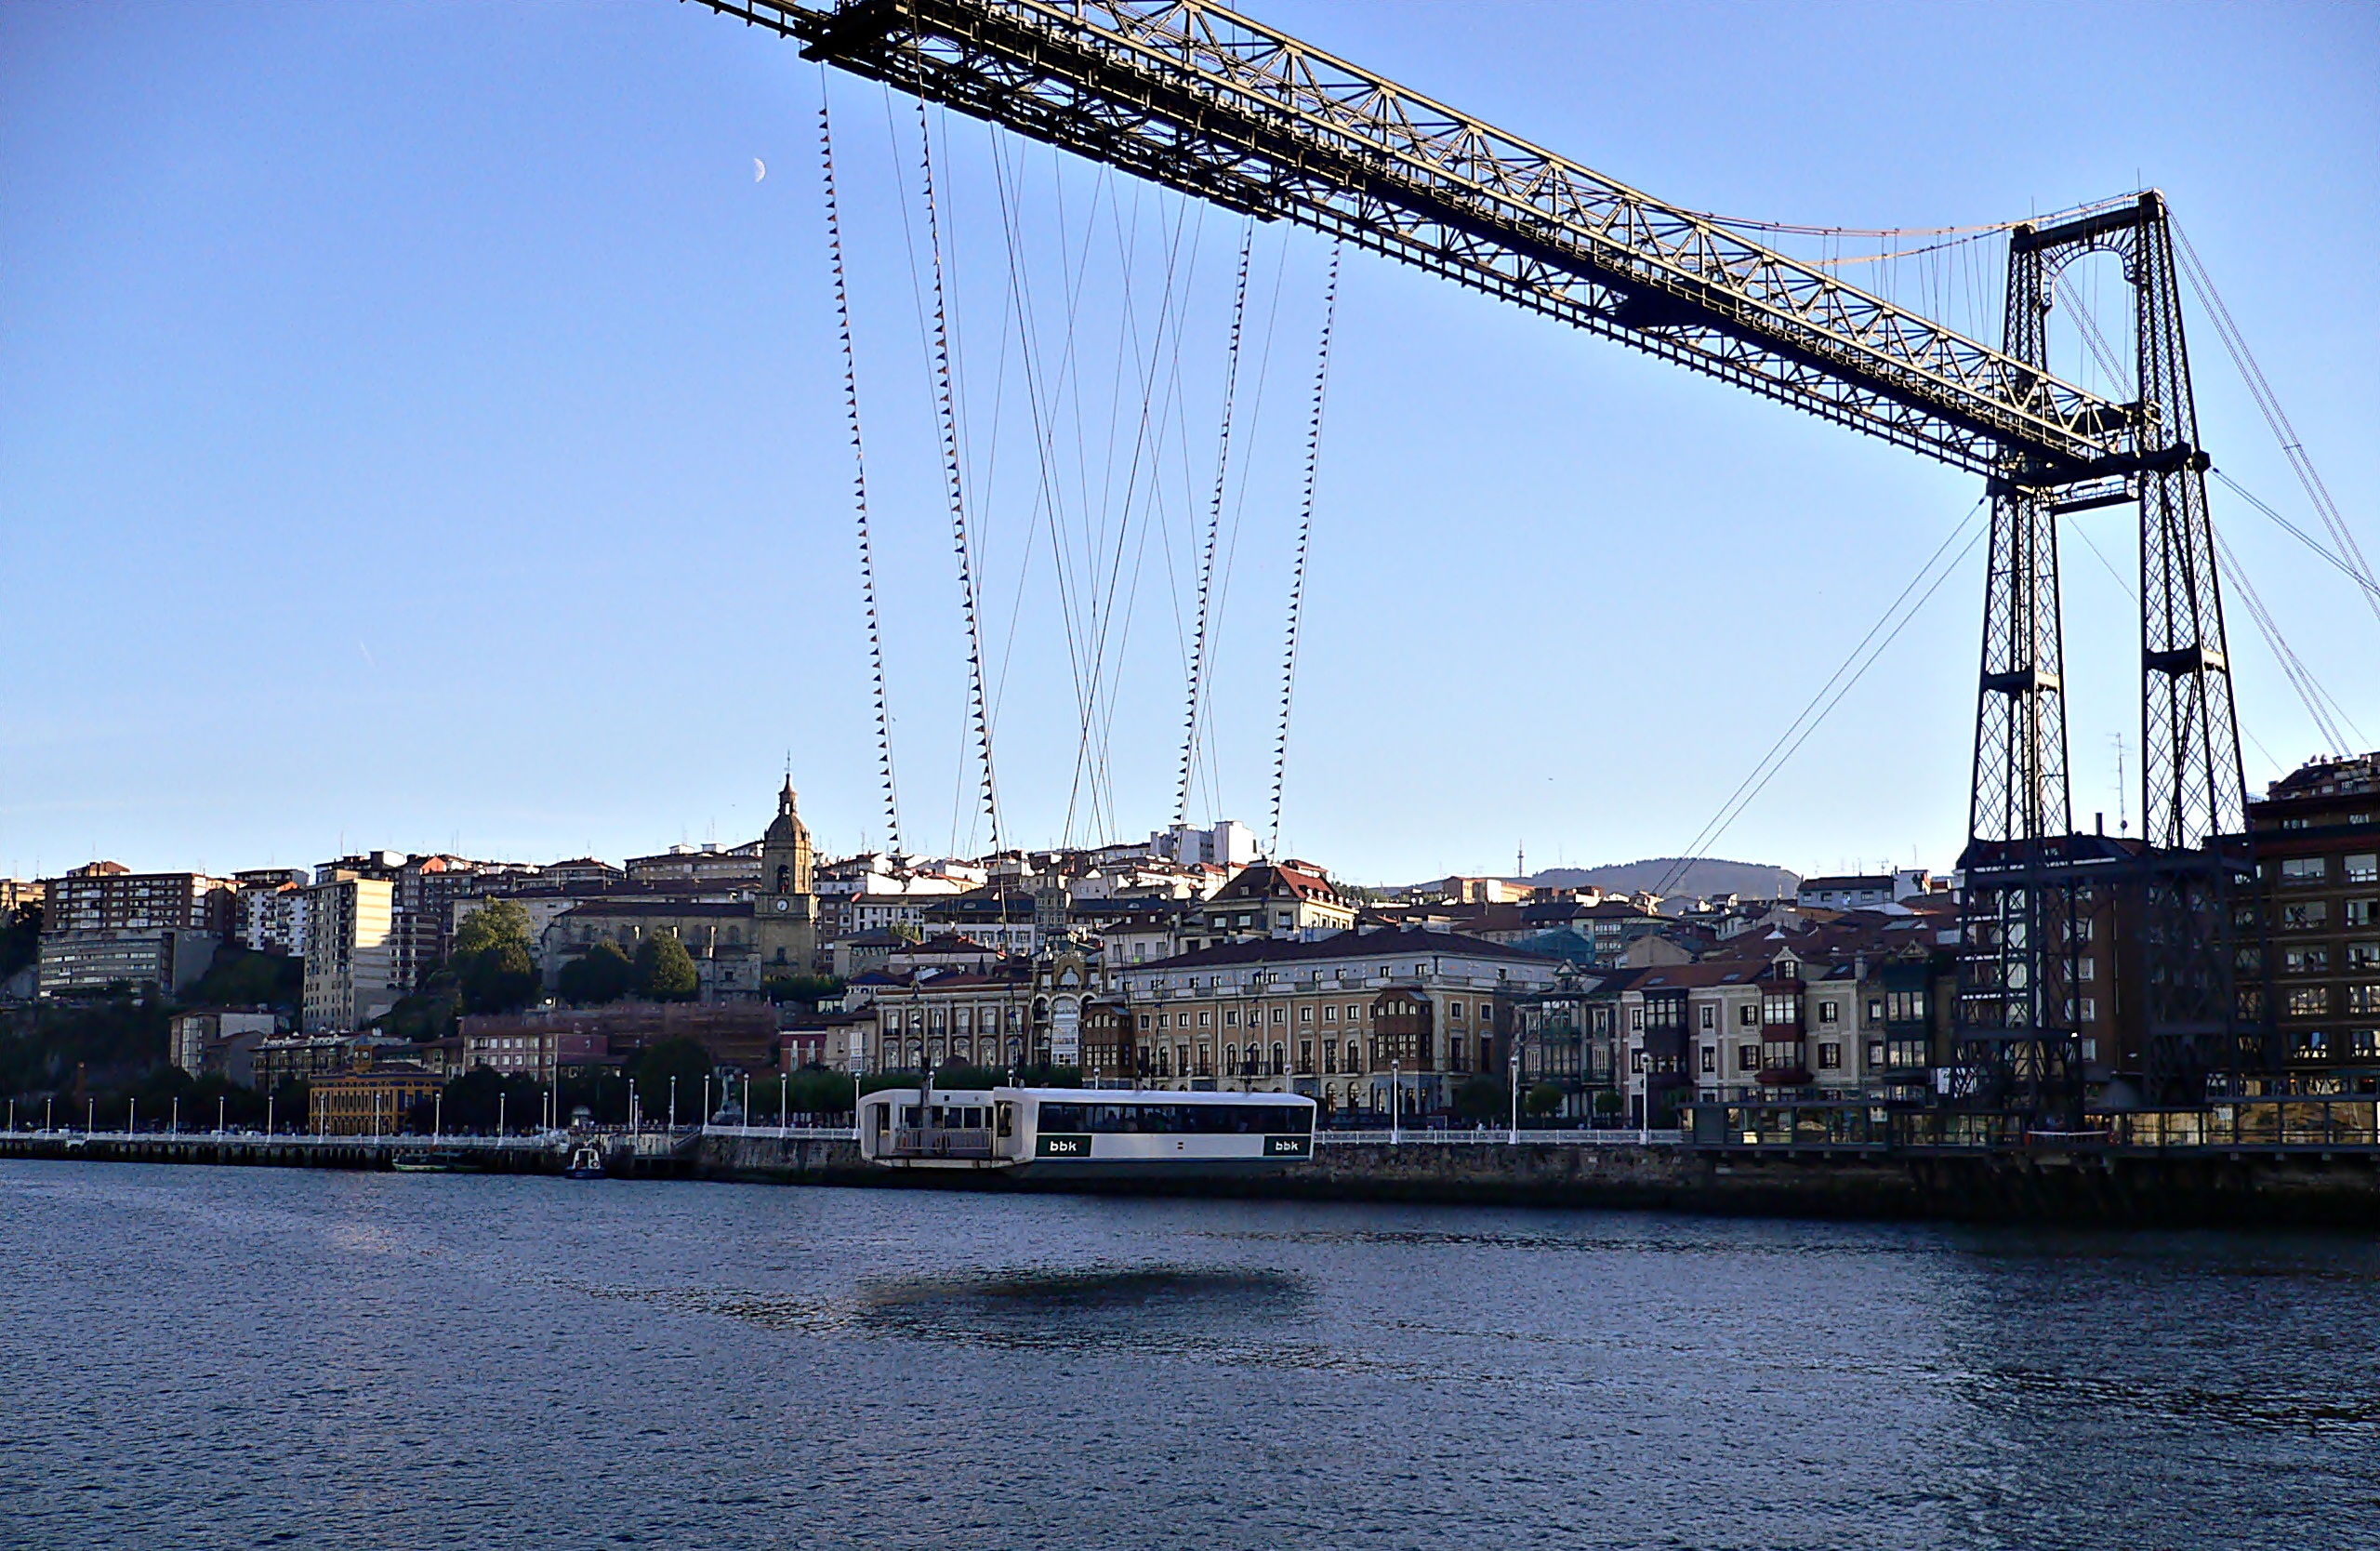 Популярные заставки и фоны Puente De Vizcaya на компьютер